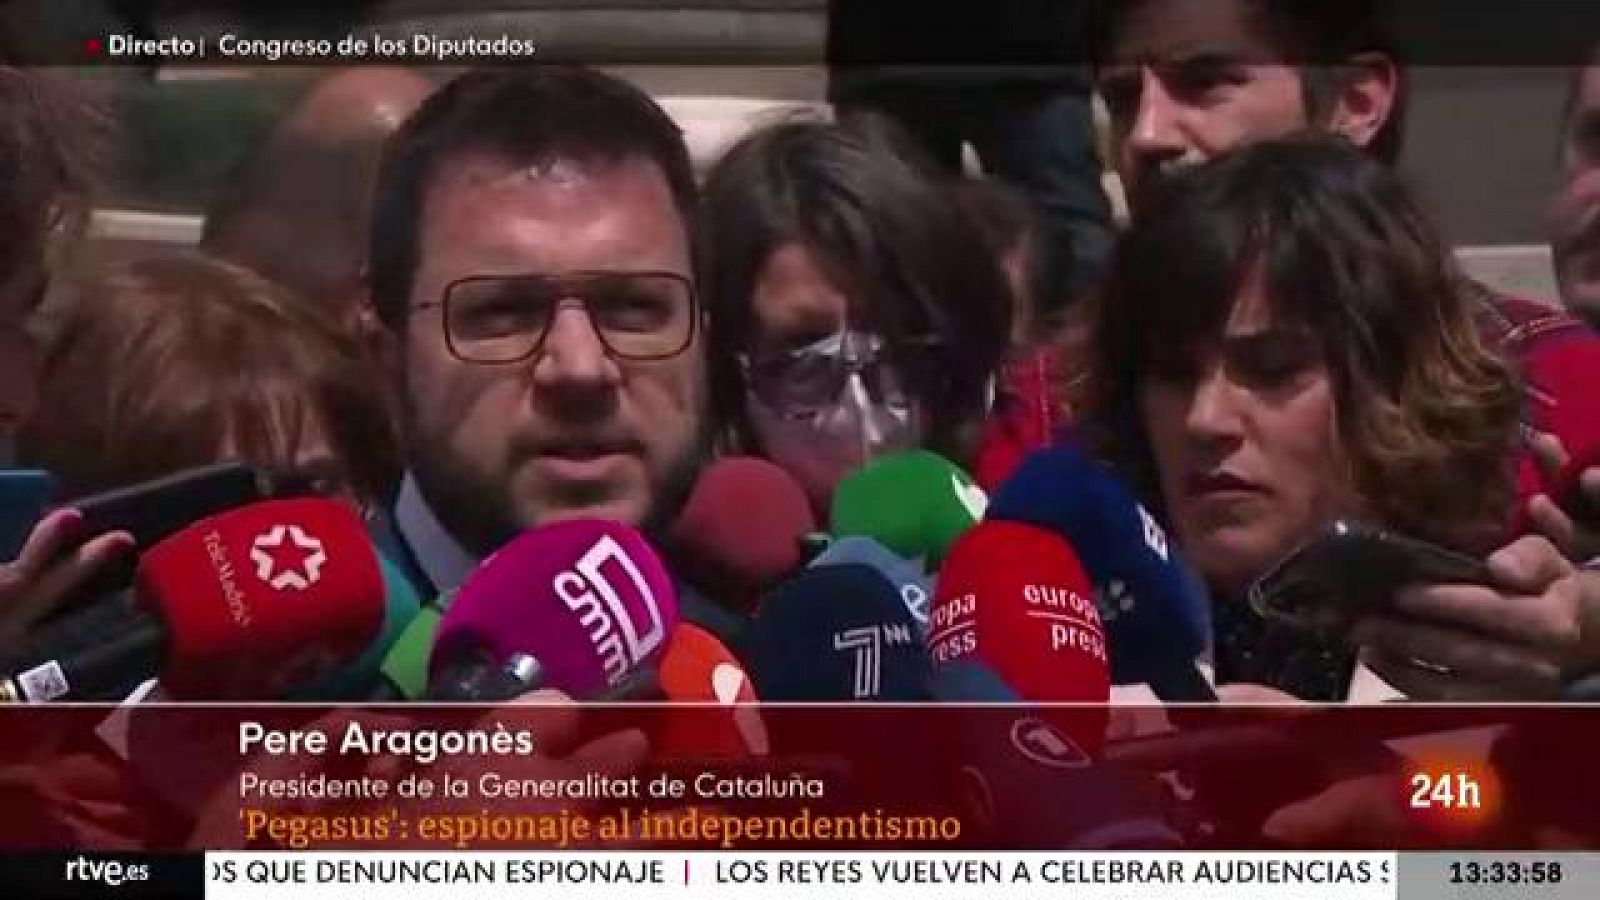 Espionaje | Aragonès: "La confianza con el Gobierno es cero"